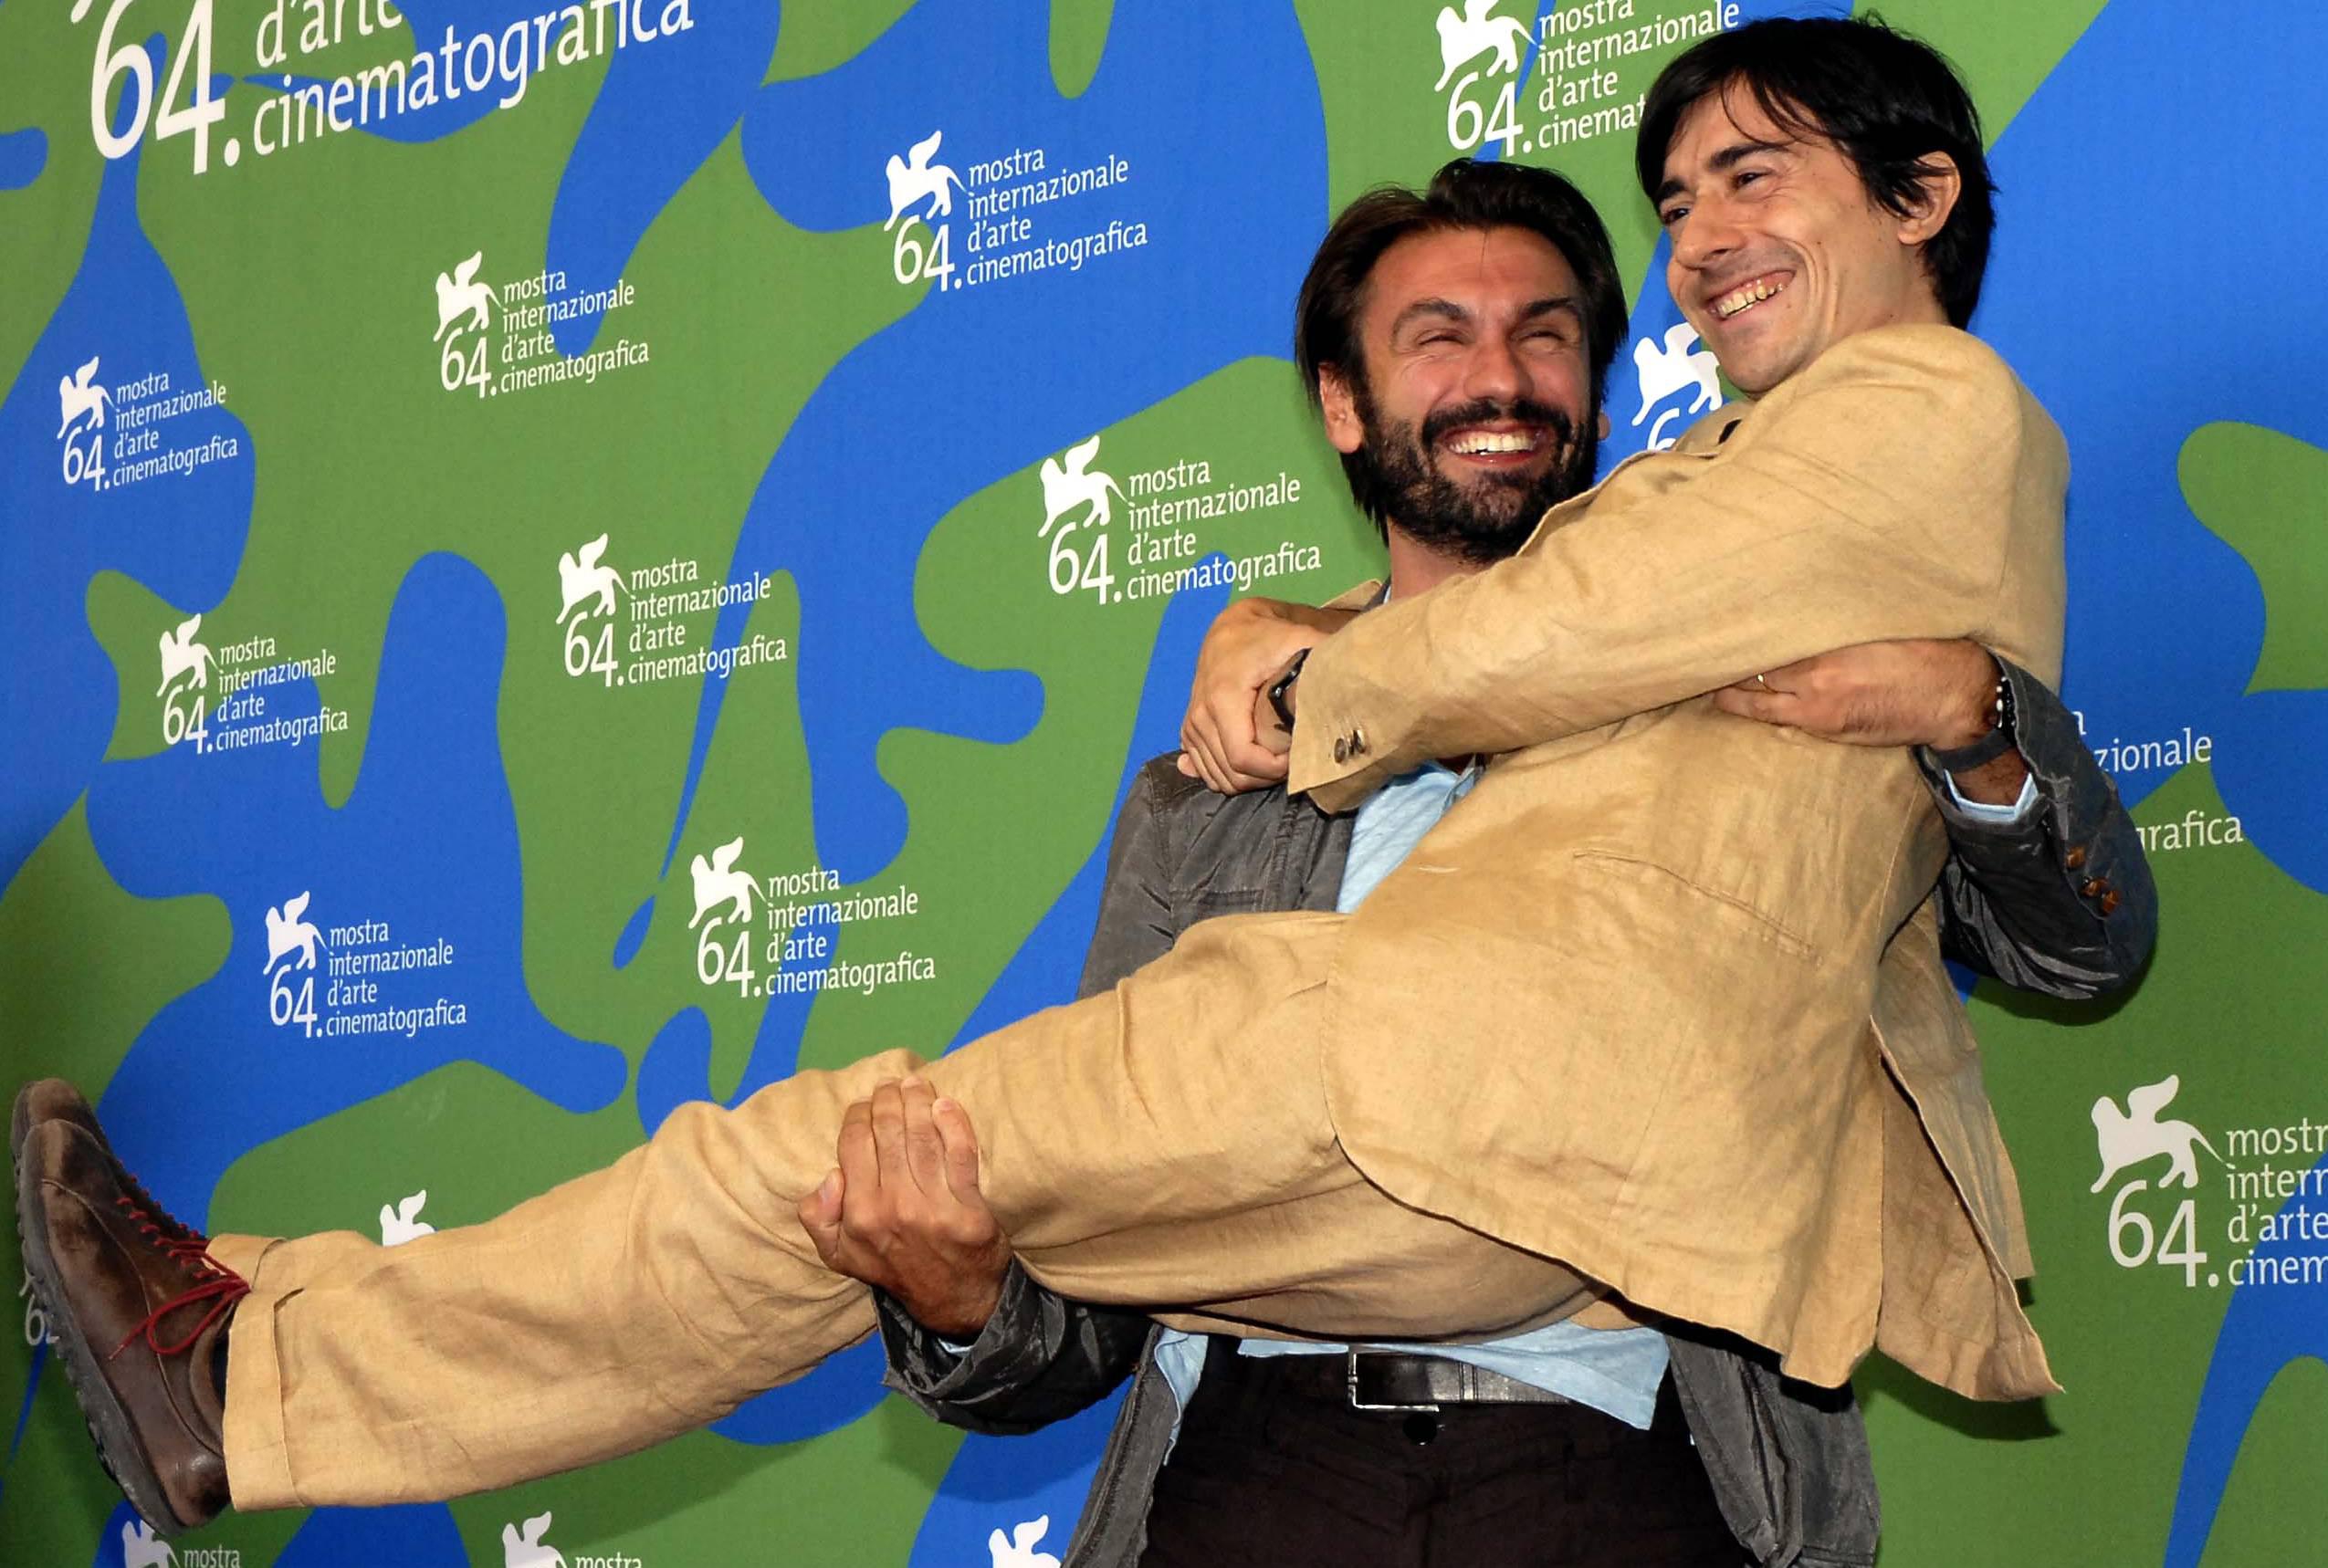 Fabrizio Gifuni con in braccio Luigi Lo Cascio a Venezia nel 2007 per il film 'Il dolce e l'amaro' (foto Infophoto)